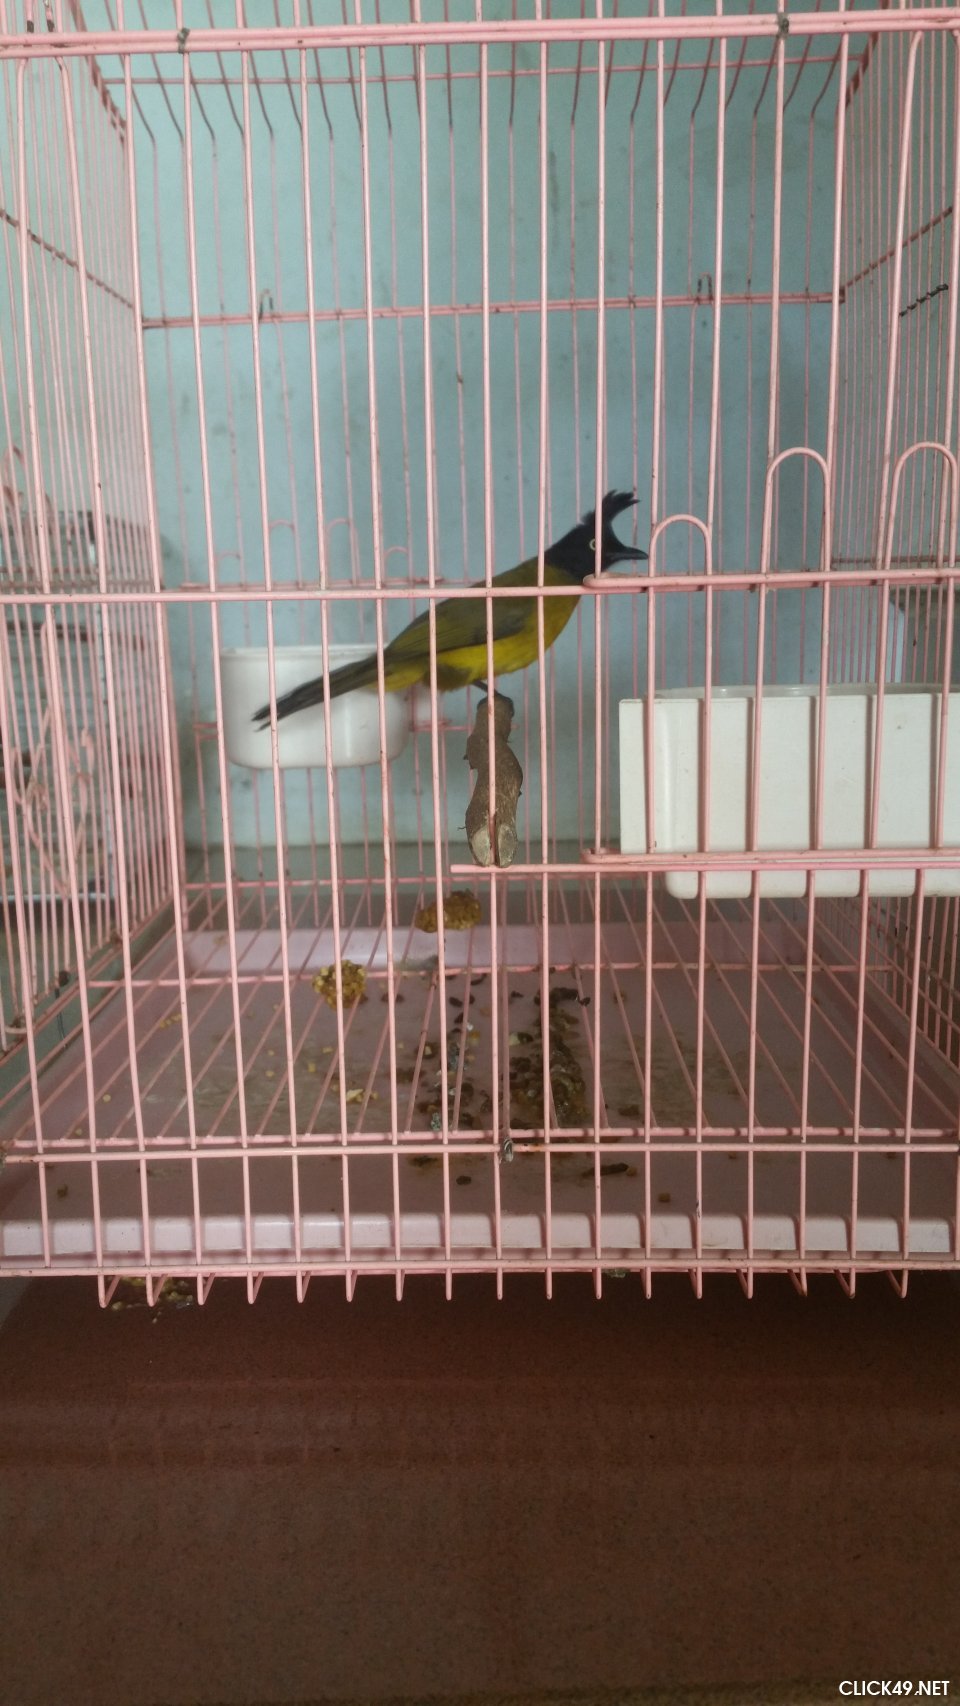 Giá chim chào mào. Mua bán chim chào mào ở Hà Nội & TPHCM